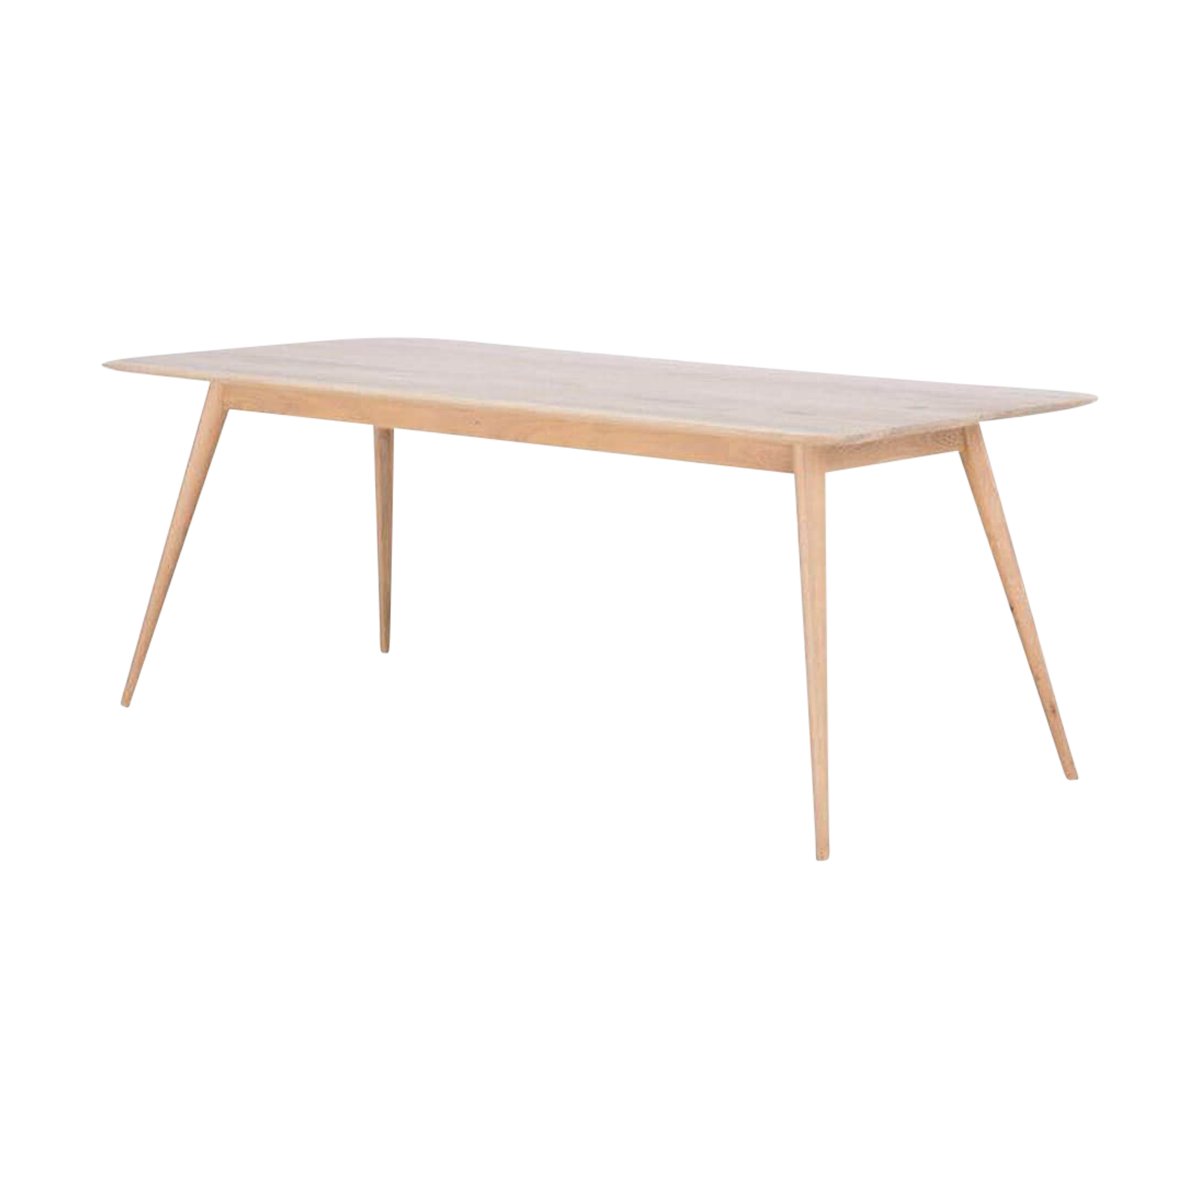 Stafa table houten eettafel whitewash - 160 x 90 cm